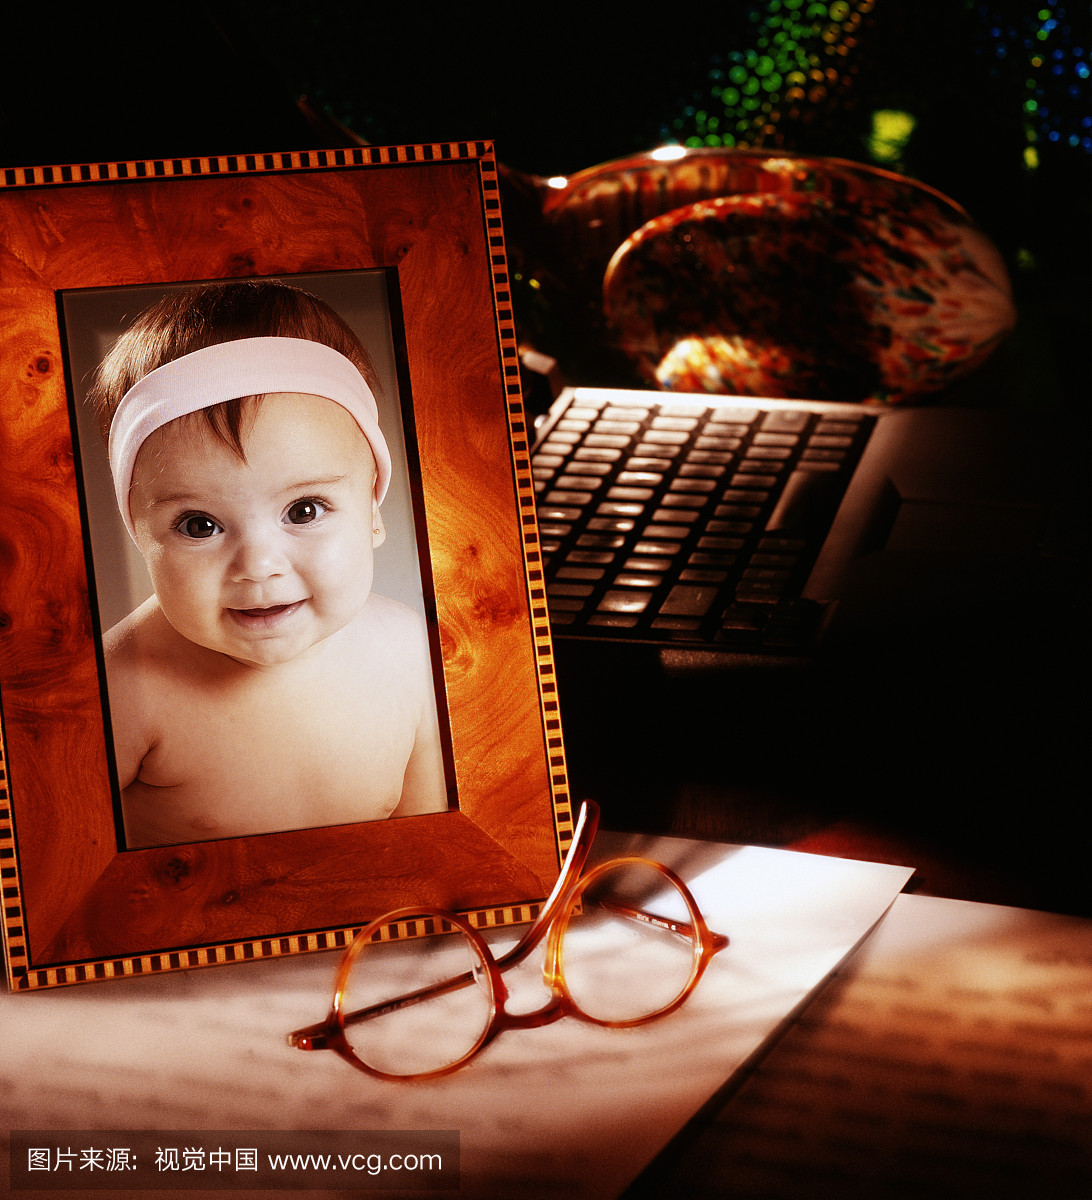 婴儿女孩(9-12个月)在桌子上的框架照片